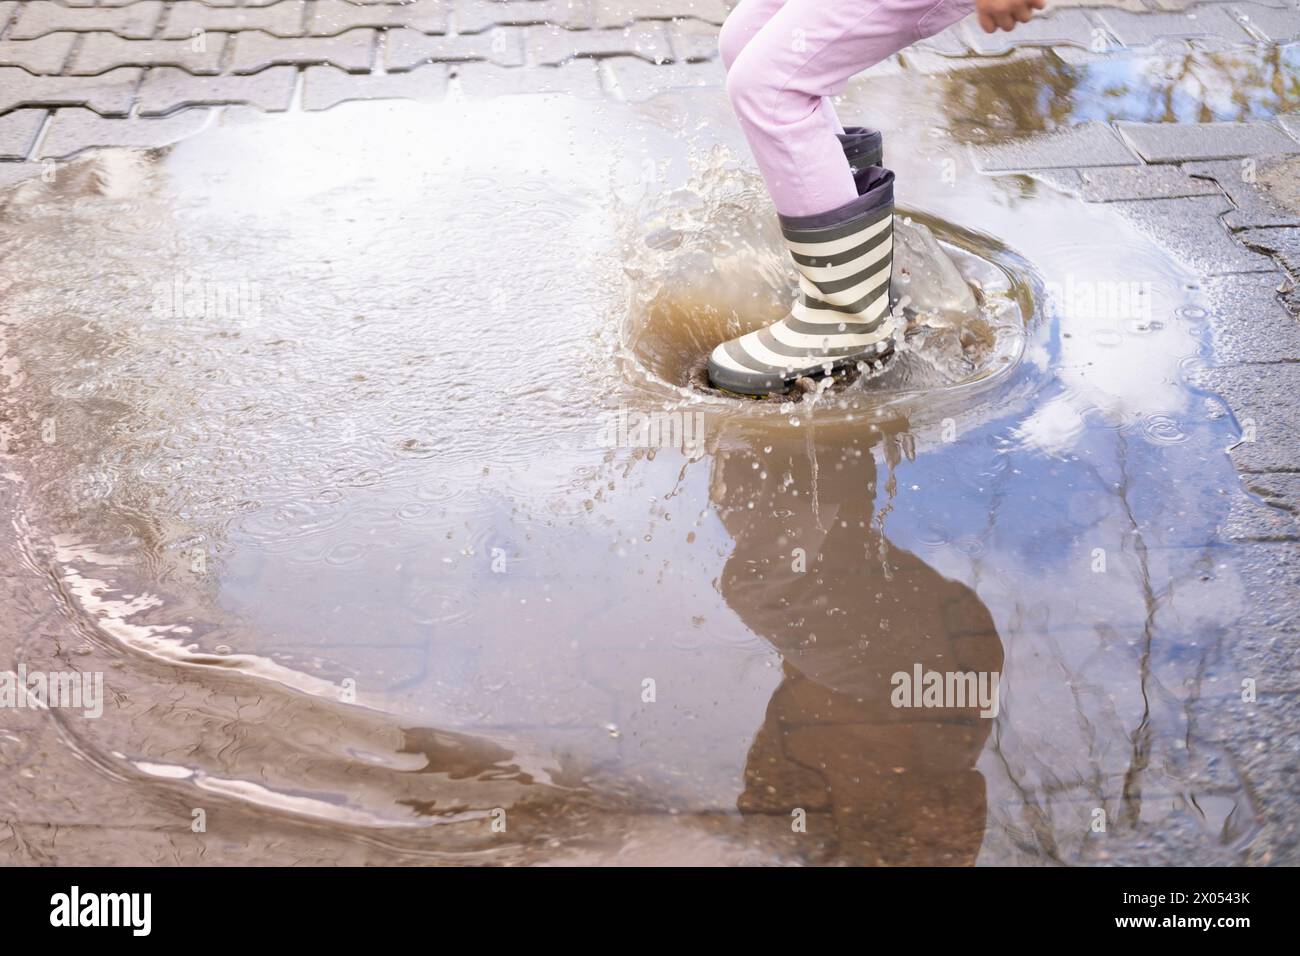 la maliziosa ragazza di 5 anni con stivali di gomma salta con gioia in pozzetto, ravvicinare i piedi dei bambini in spruzzi d'acqua, , catturando gioie pure e semplici chi Foto Stock